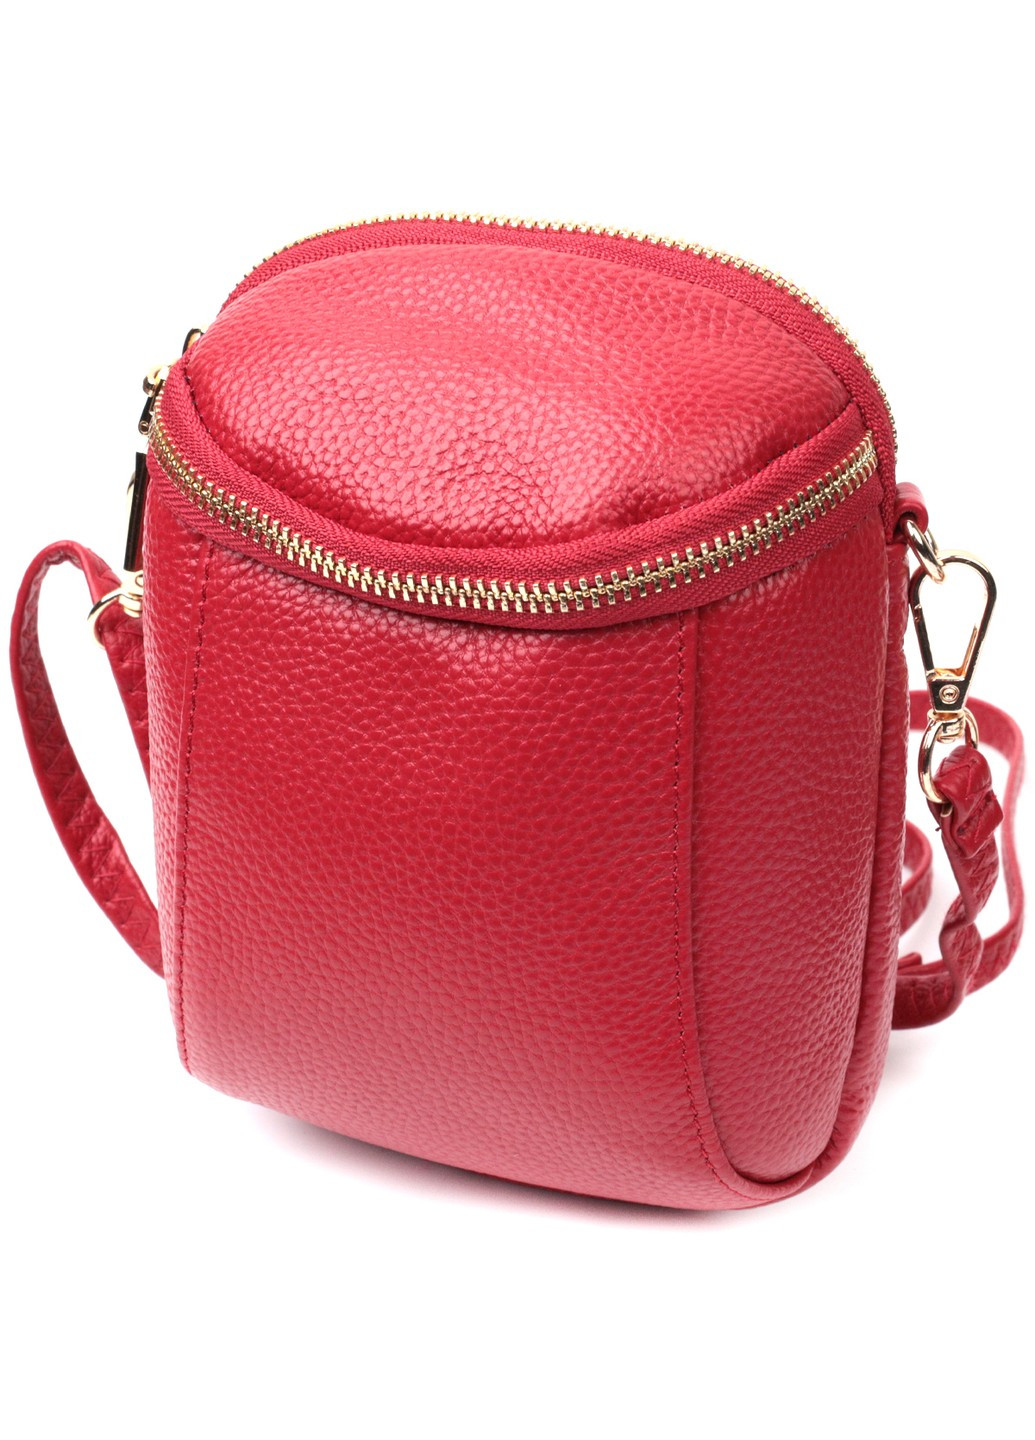 Яркая сумка интересного формата из мягкой натуральной кожи 22340 Красная Vintage (276461810)